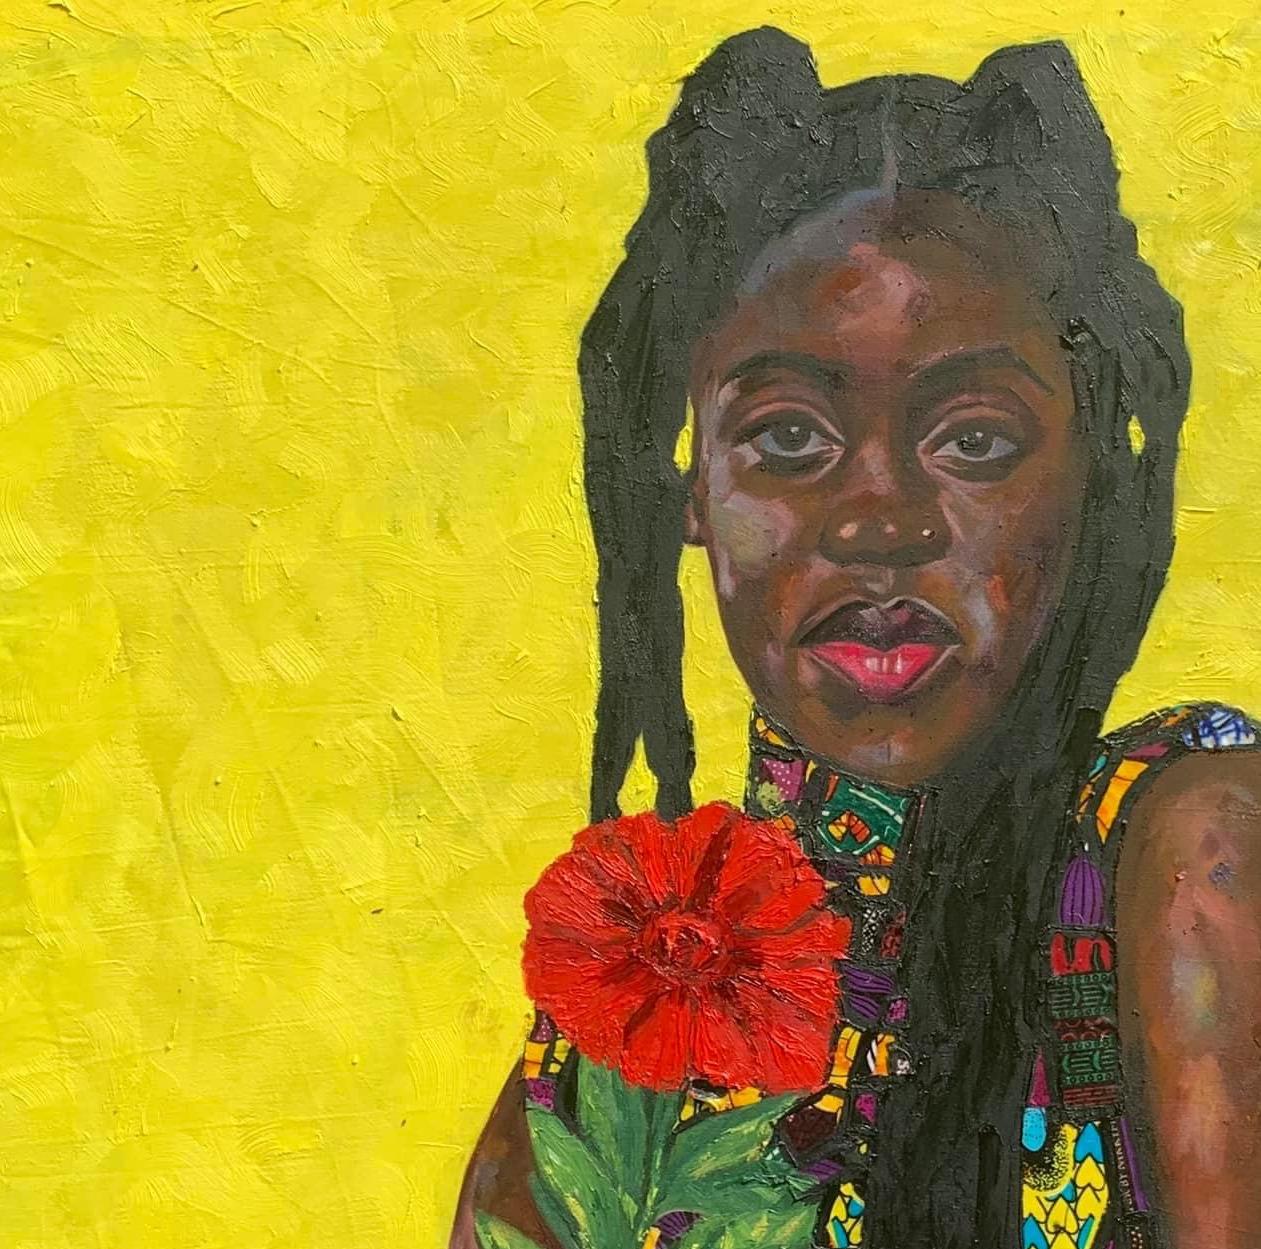 African Radiant: Celebration of Beauty and Joy  - Painting by Bakare Abubakri-sideeq Babatunde